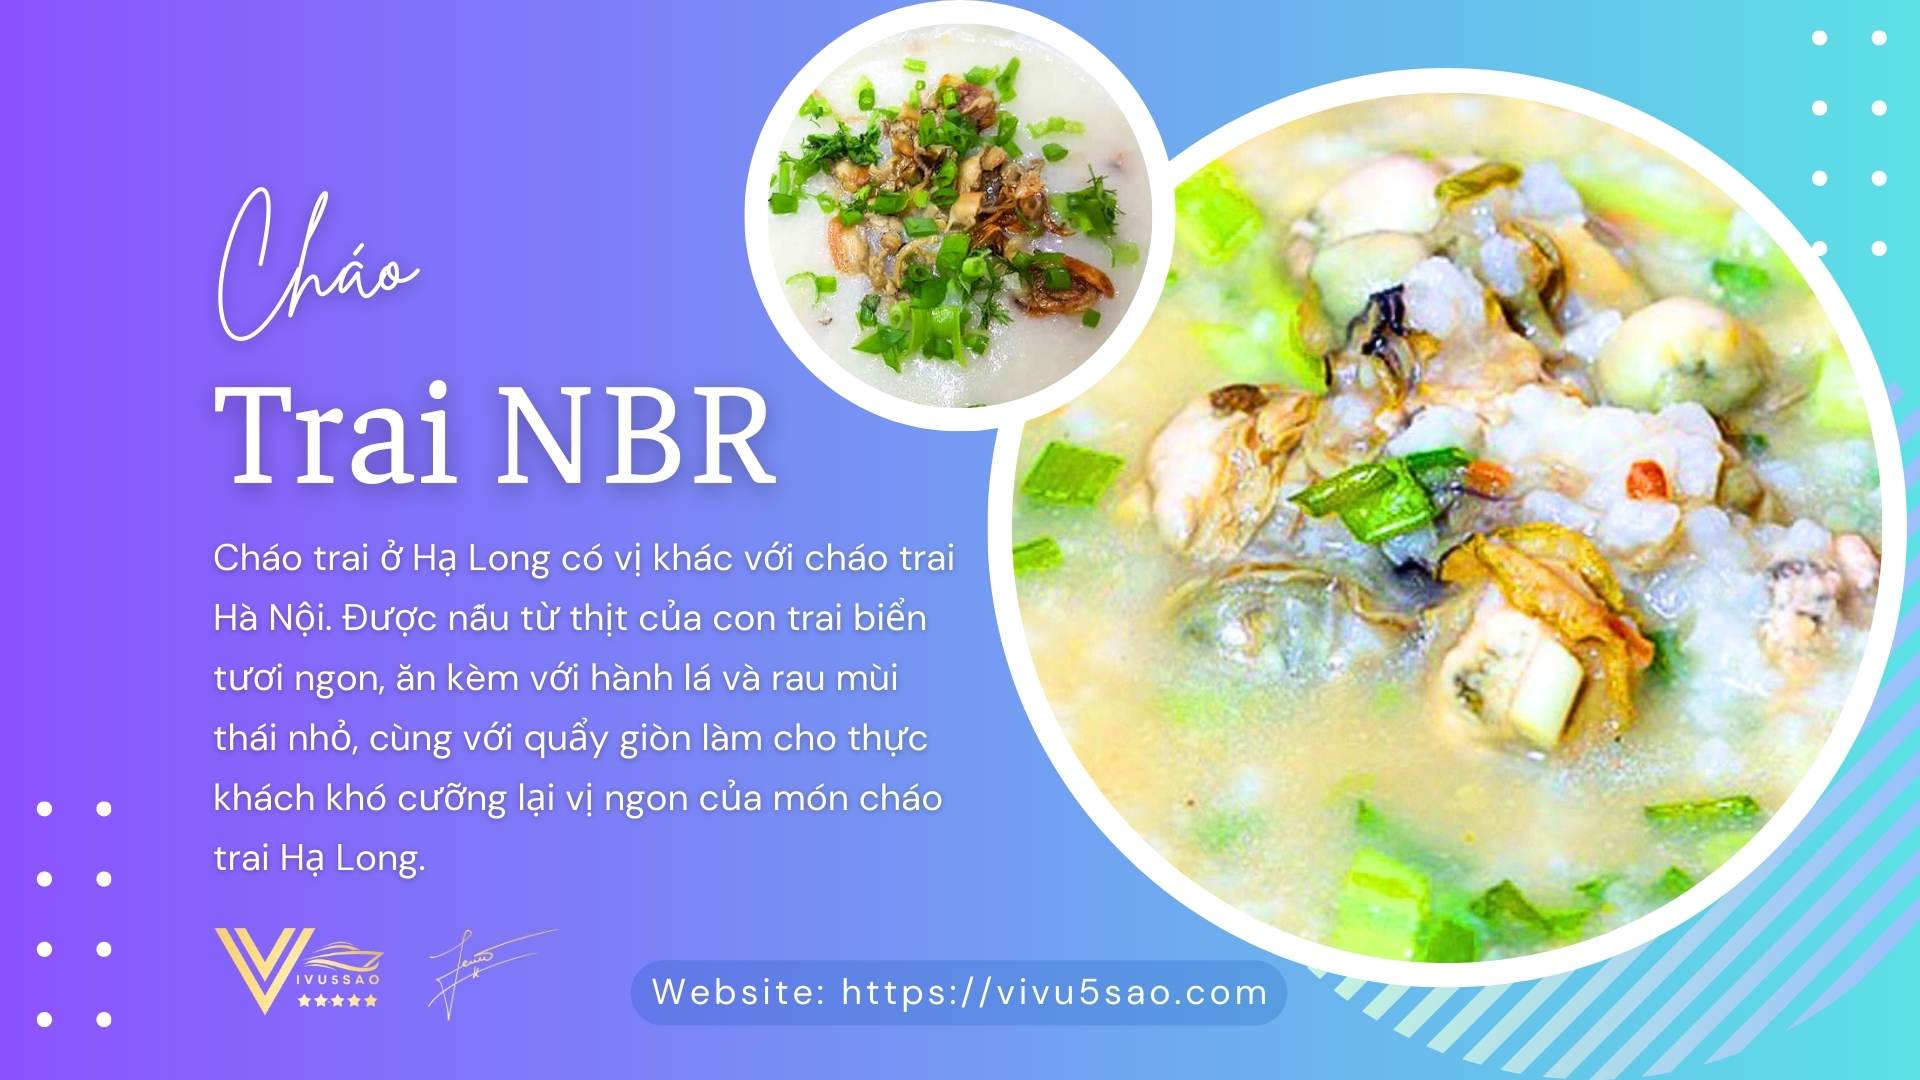 Cháo trai NBR Hạ Long - Món ăn sáng Hạ Long